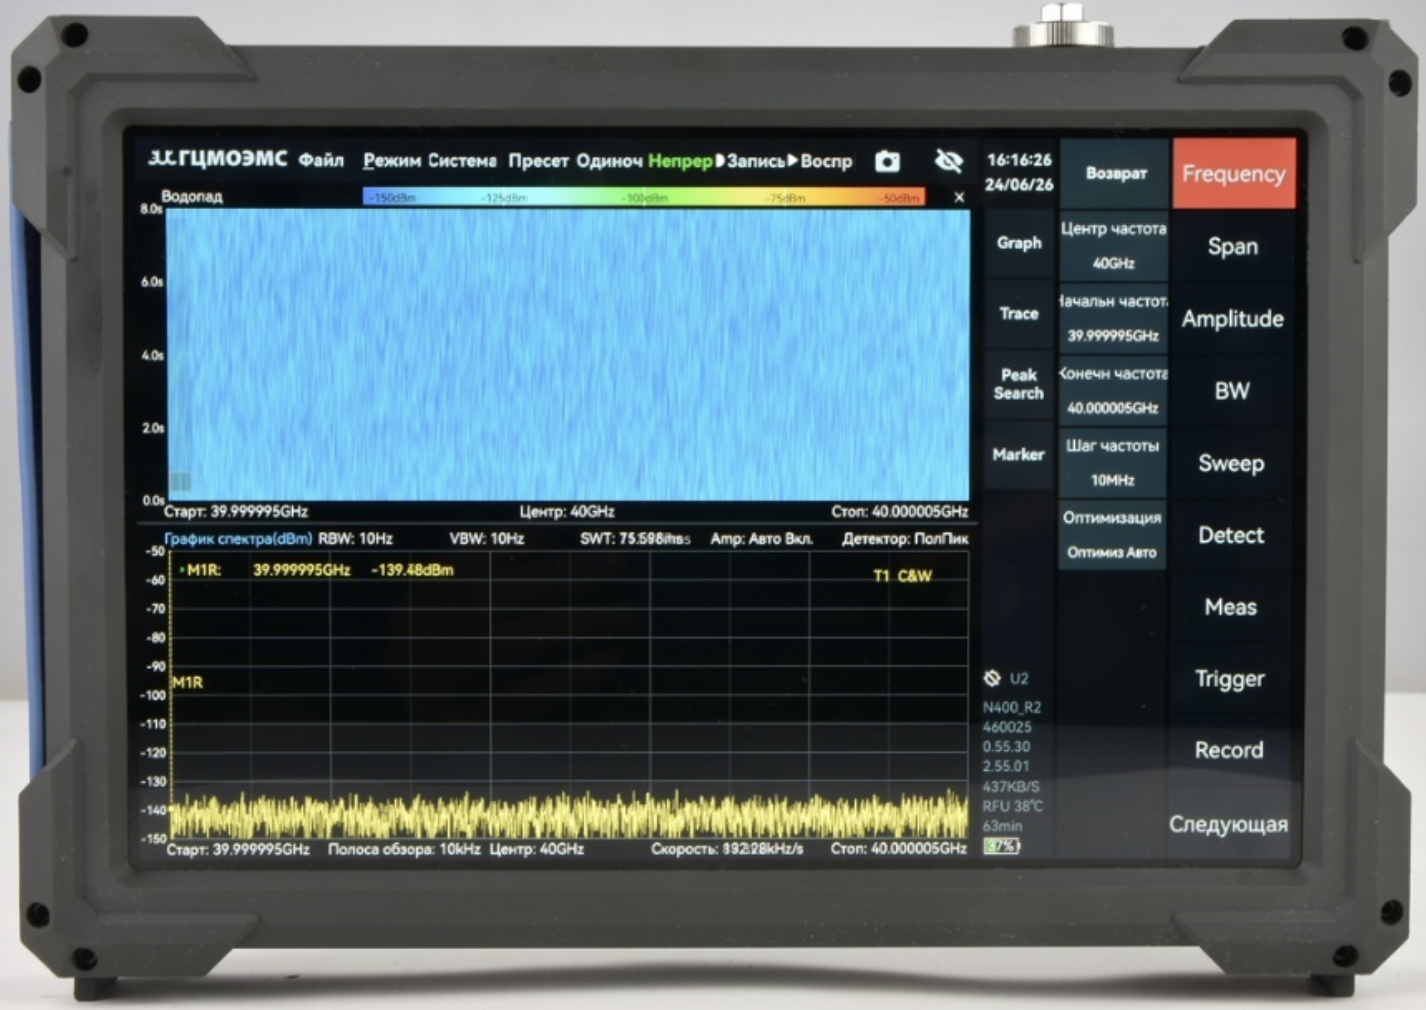 Портативный анализатор спектра реального времени
ГЦМО ЭМС АСРВ-40П
с диапазоном от 9 кГц до 40 ГГц